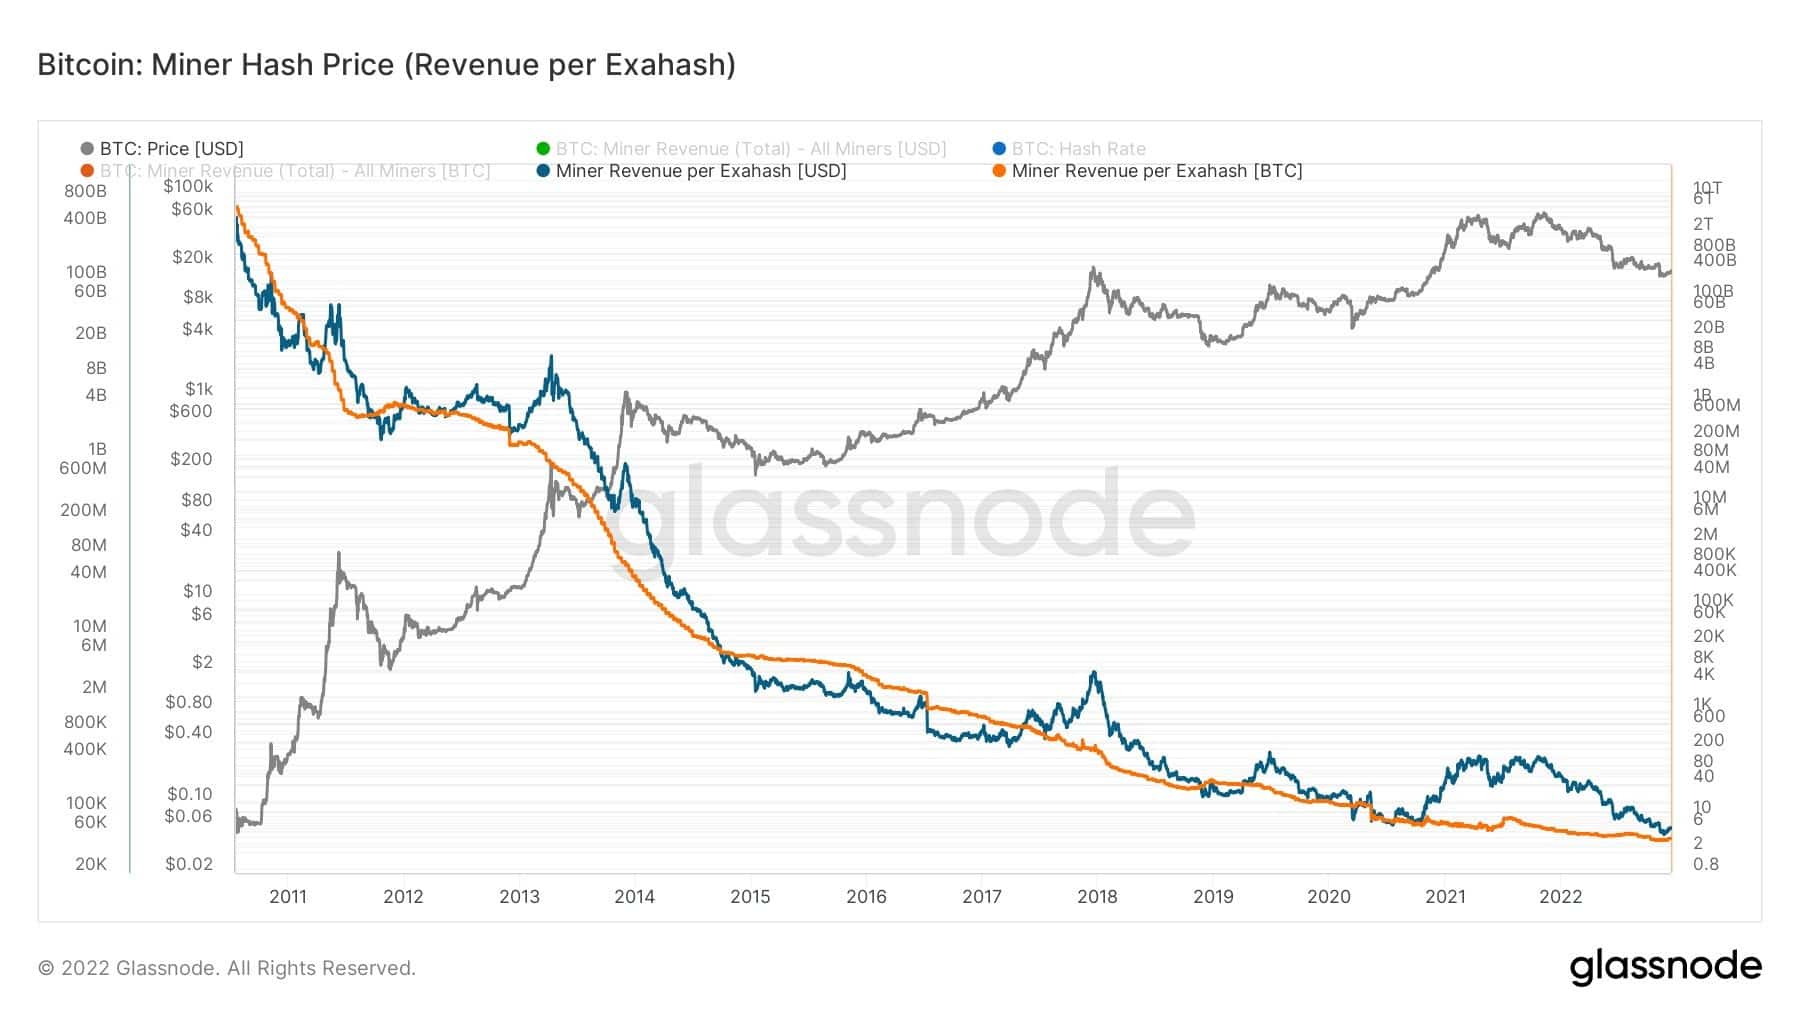 Graf zobrazující příjmy těžařů z jednoho Exahashe (zdroj: Glassnode)